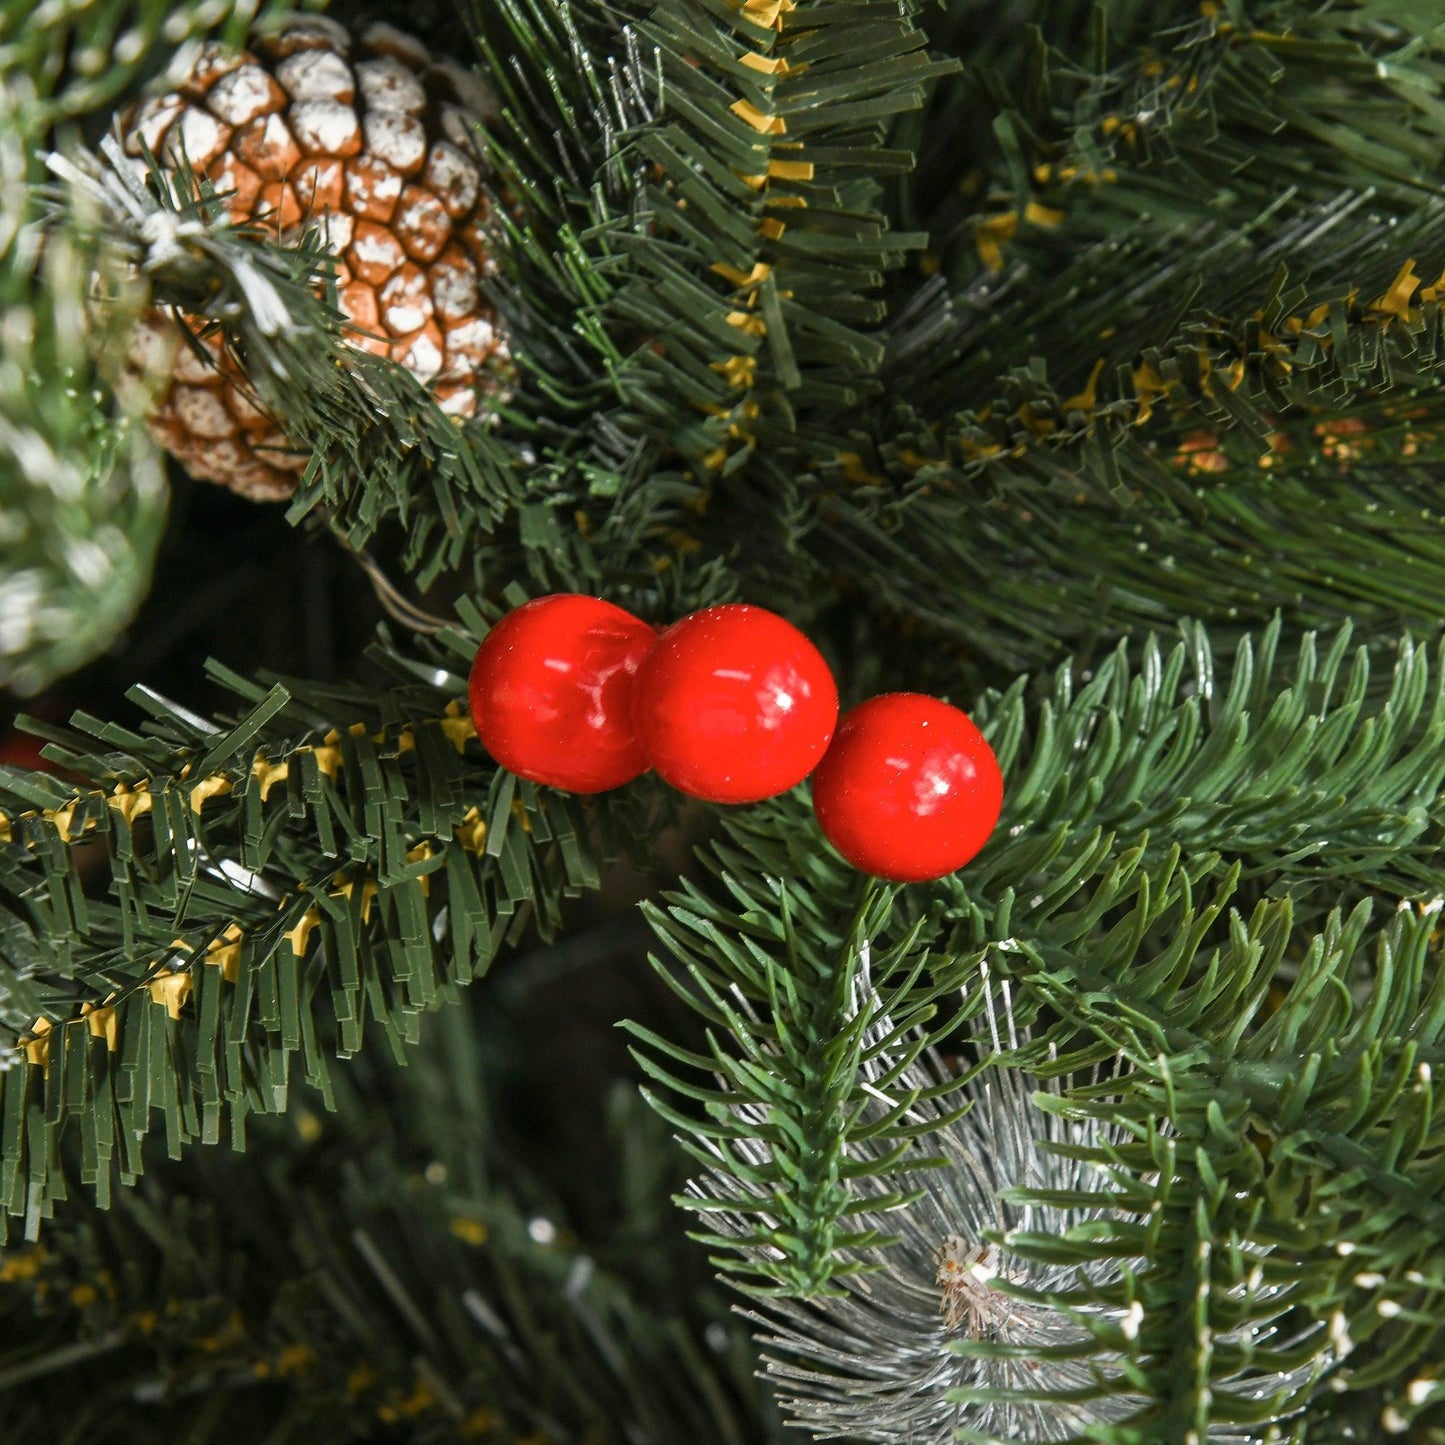 HOMCOM Snow Dipped Xmas Tree - Festive 5FT Decoration - ALL4U RETAILER LTD